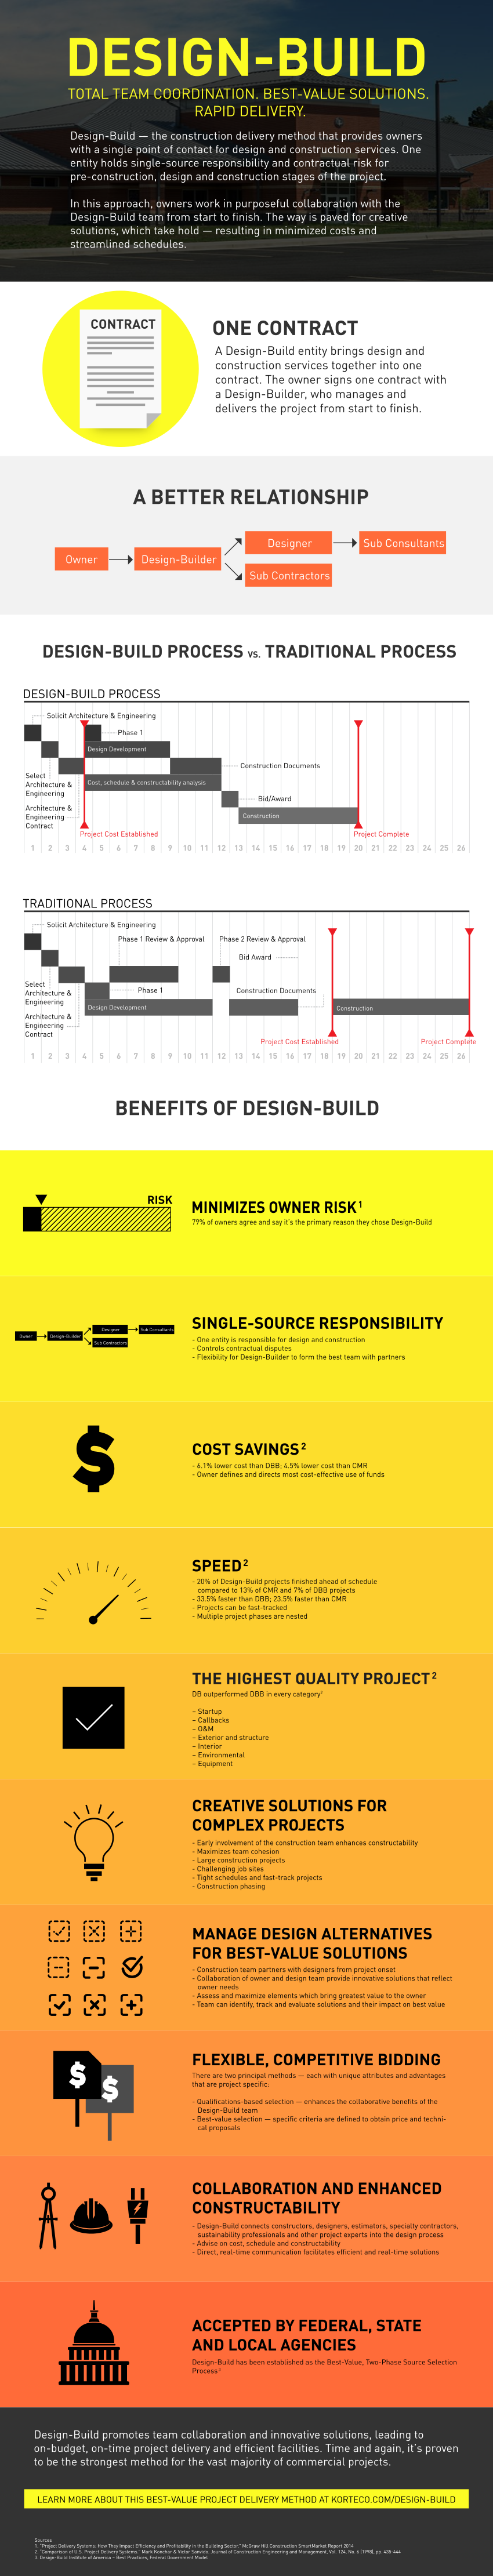 Design-Build Infographic